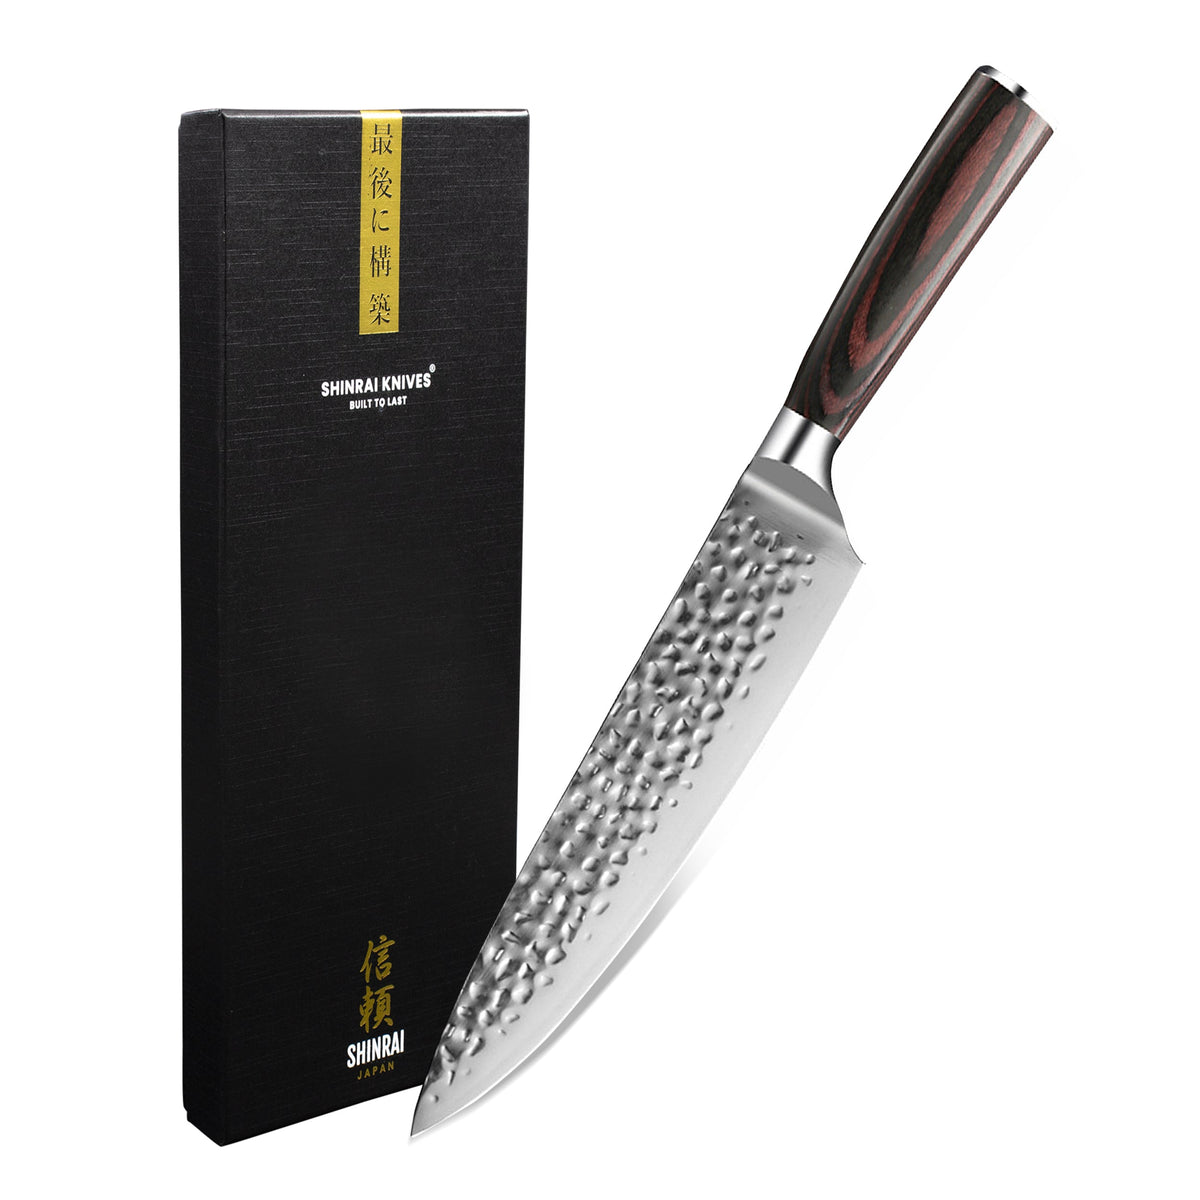 Couteau à plâtre Jung acier inoxydable - 20 mm